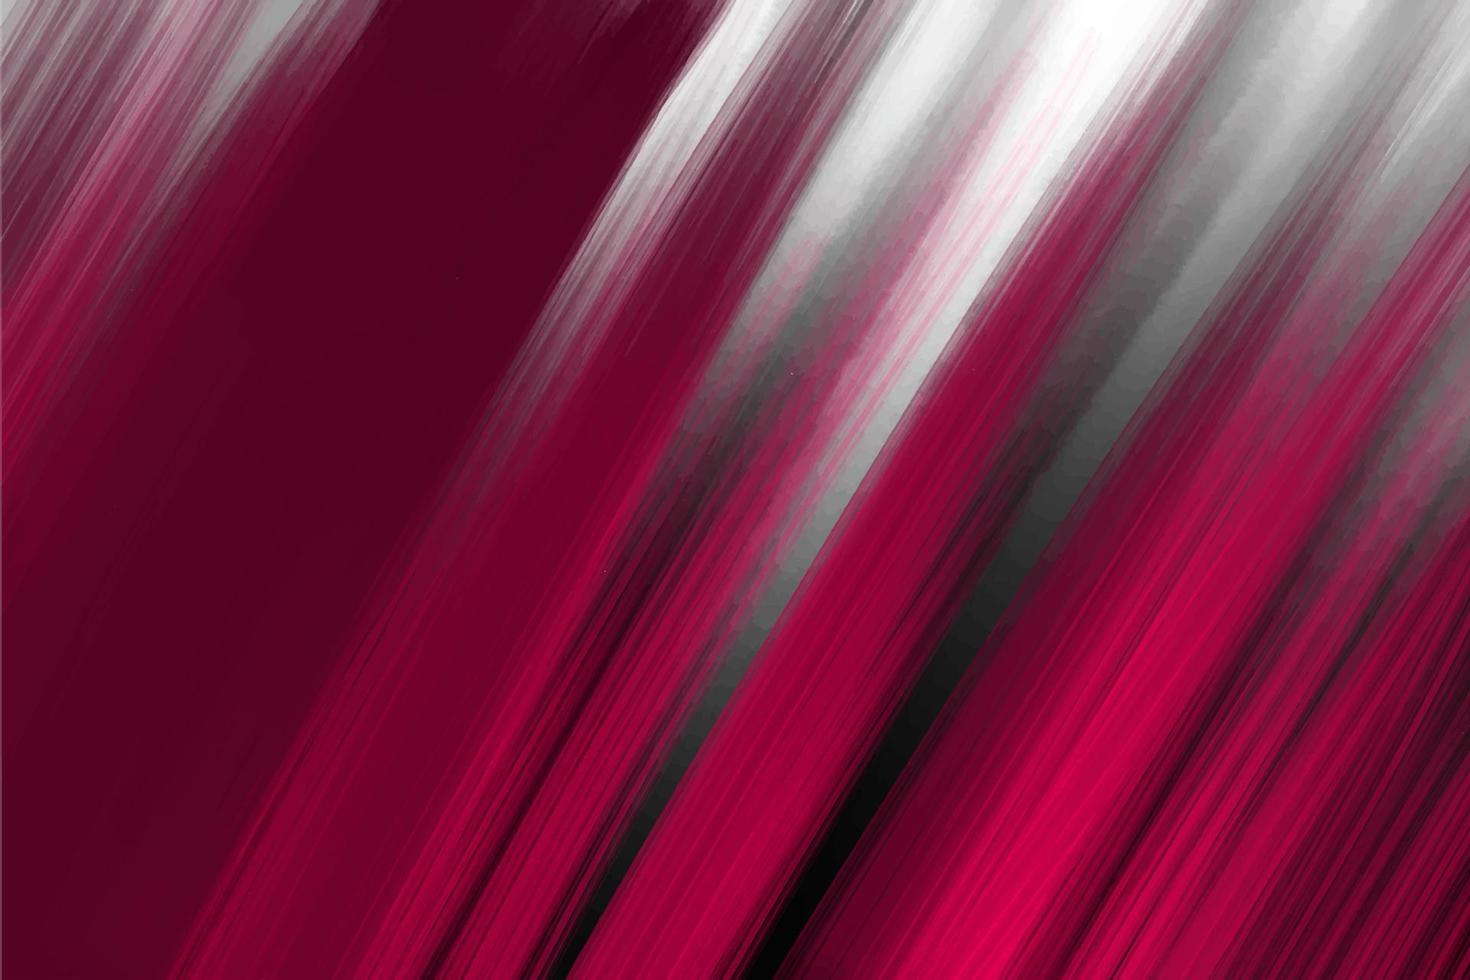 Acrylhintergrund auf weißer Leinwand, in rosa und schwarzen Farben vektor